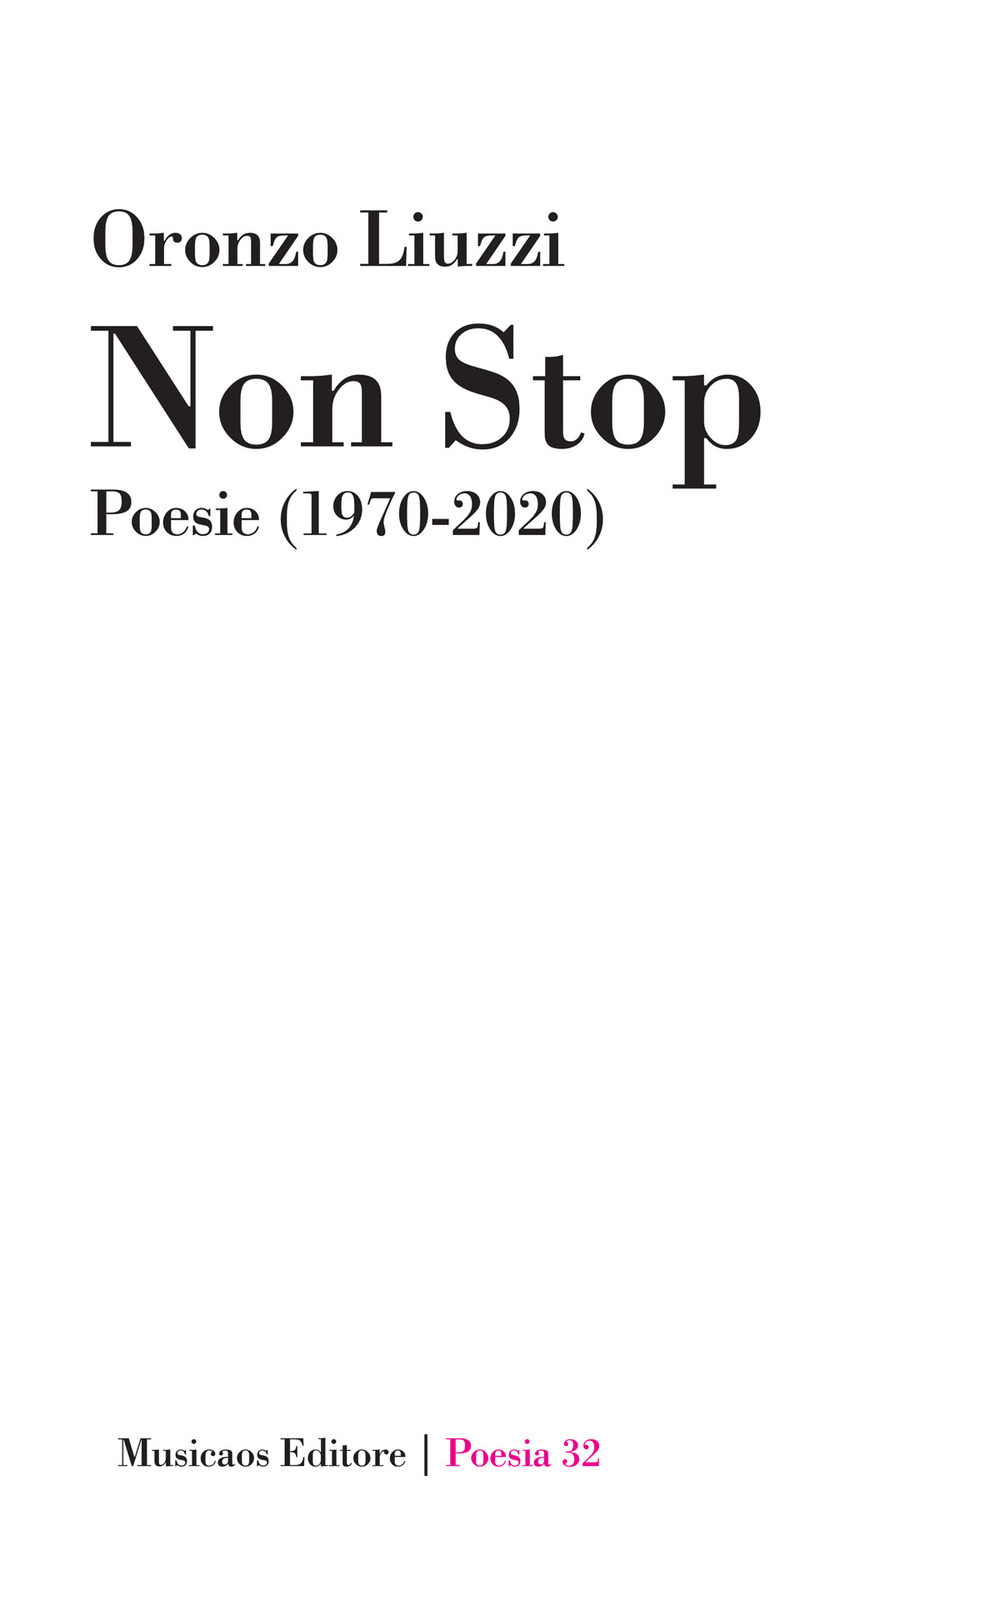 Non stop. Poesie (1970-2020)